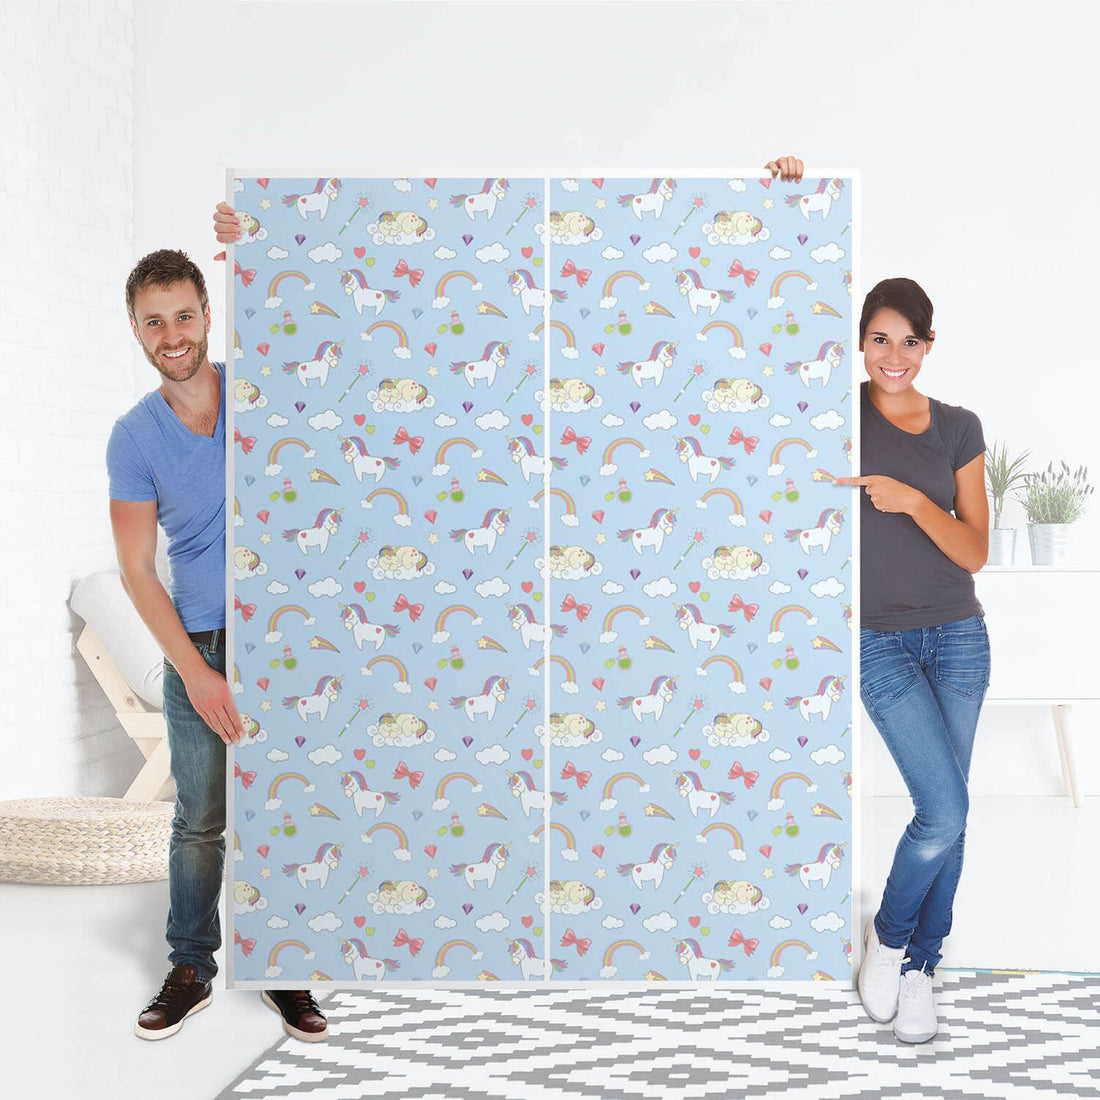 Möbel Klebefolie Rainbow Unicorn - IKEA Pax Schrank 201 cm Höhe - Schiebetür 75 cm - Folie